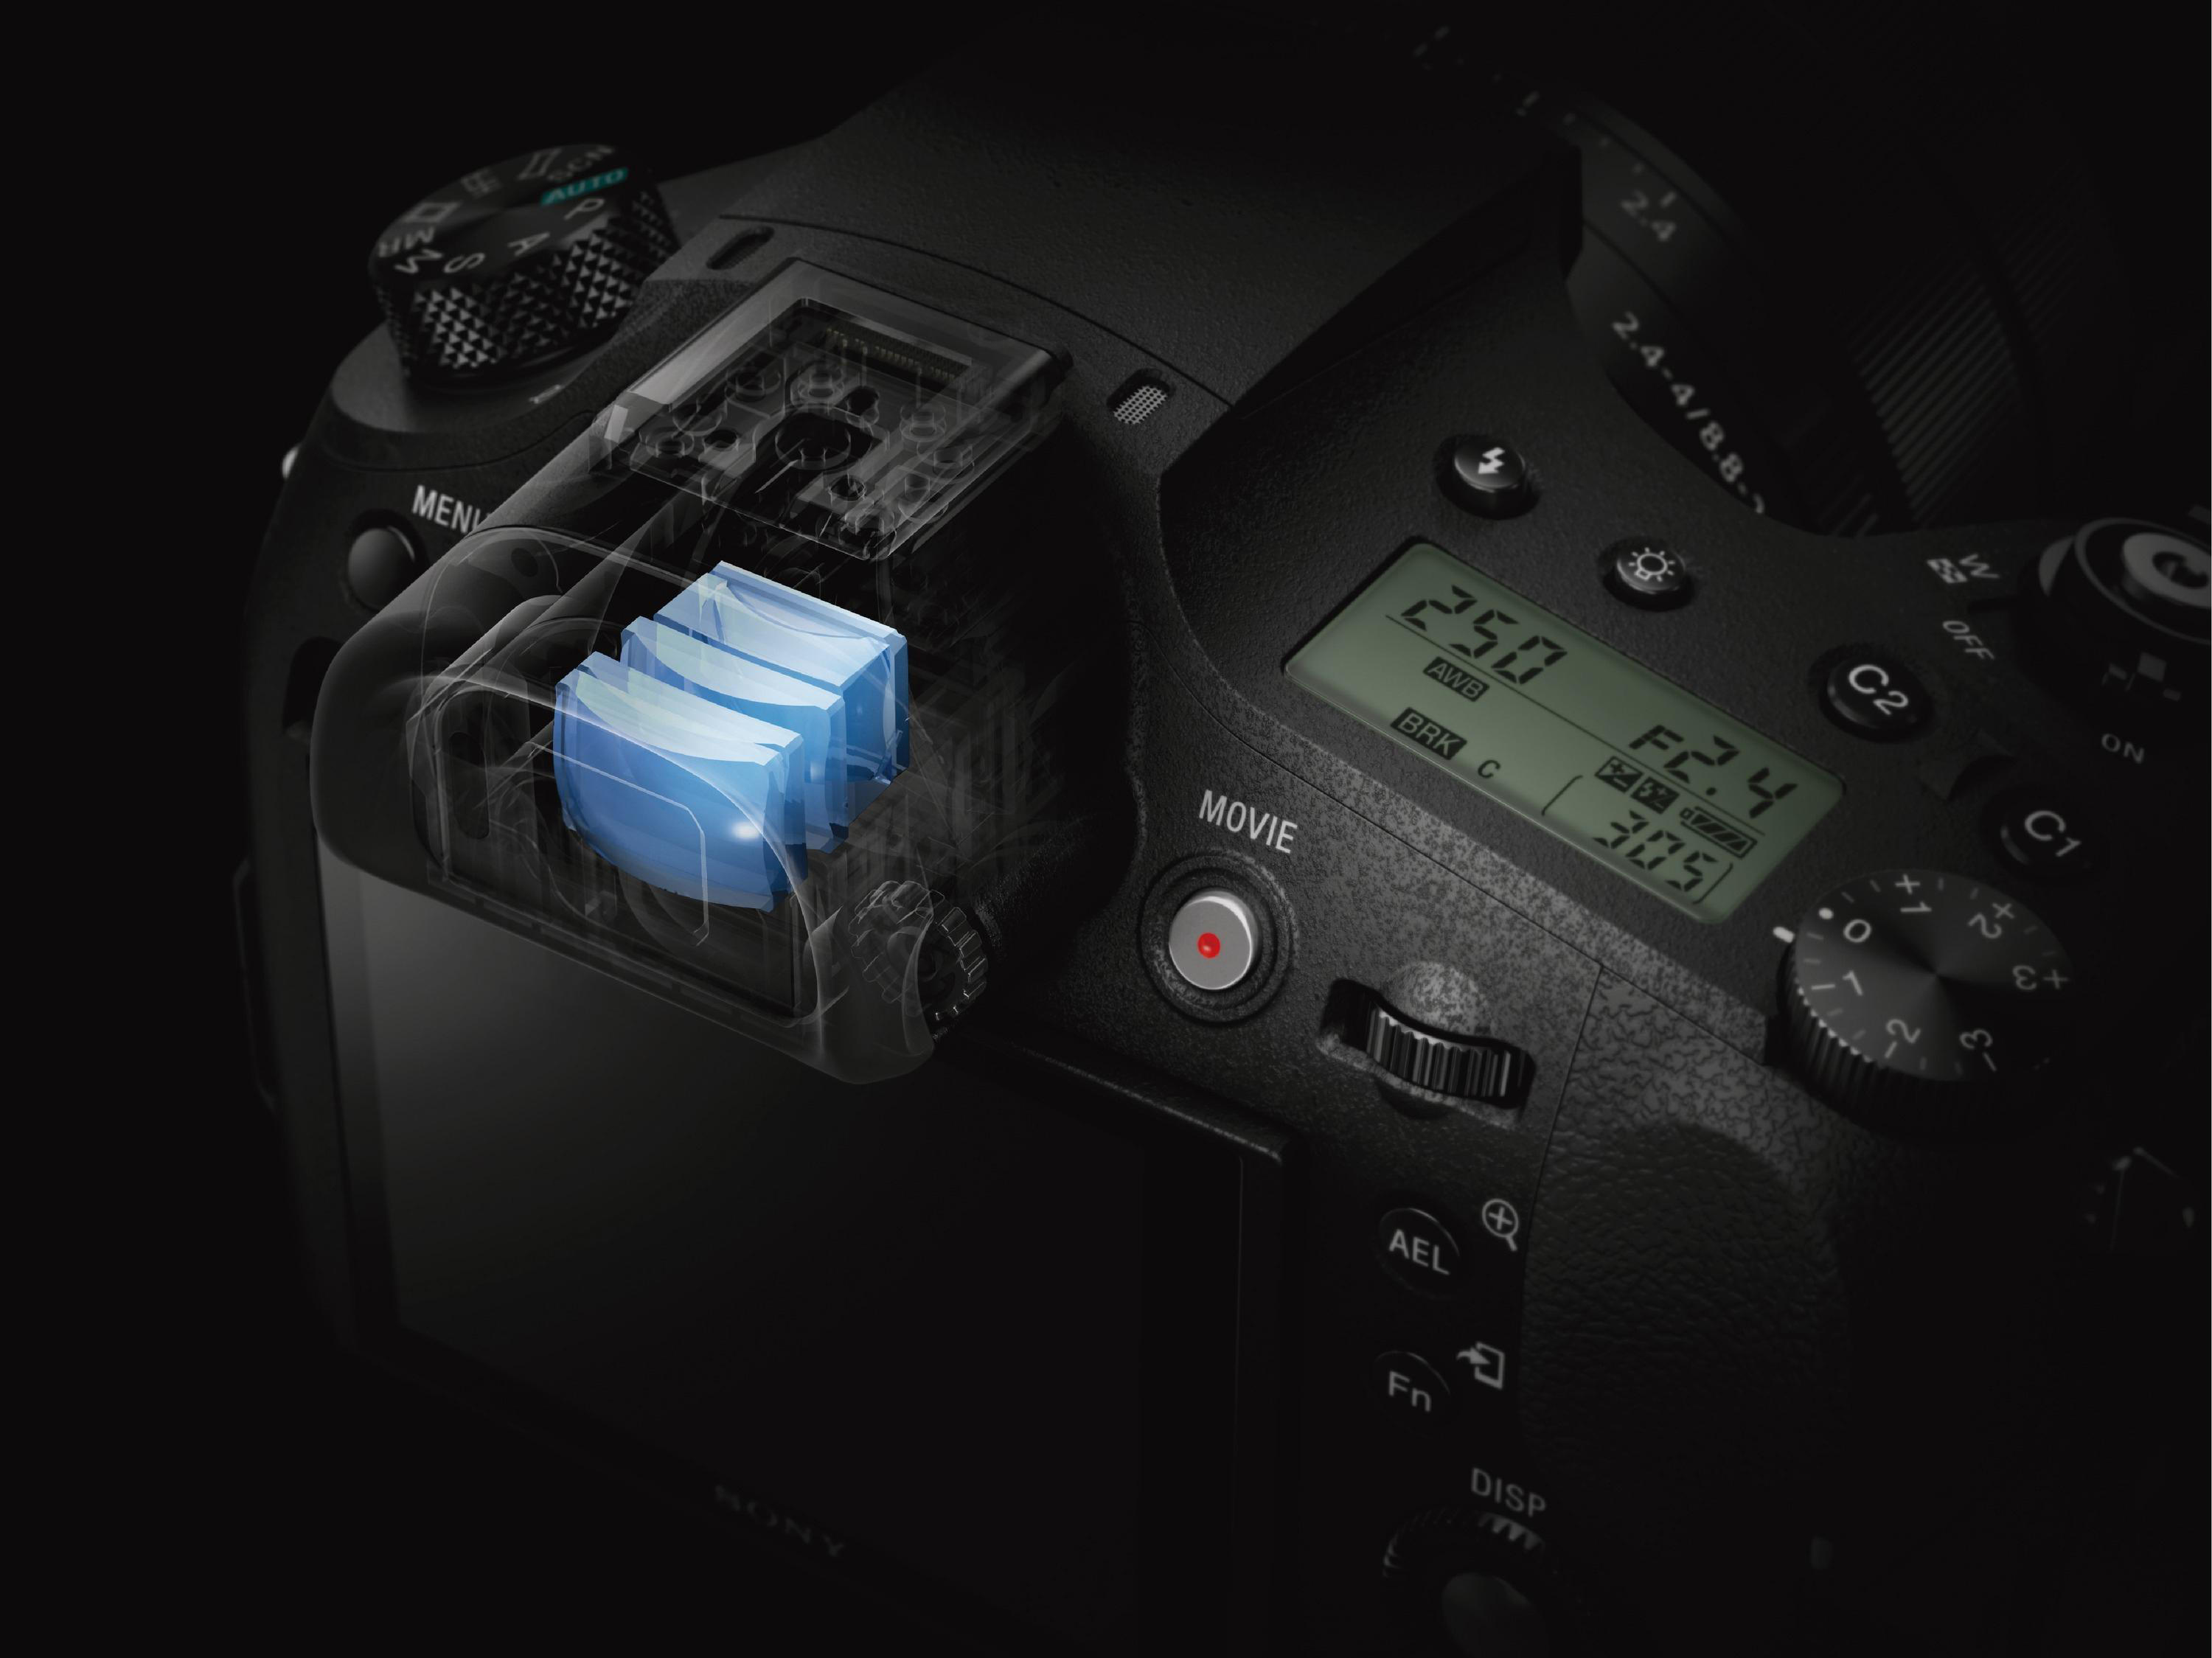 SONY Cyber-shot WLAN , opt. M3 Xtra Bridgekamera 25x TFT-LCD, NFC Fine, Zoom, DSC-RX10 Zeiss Schwarz